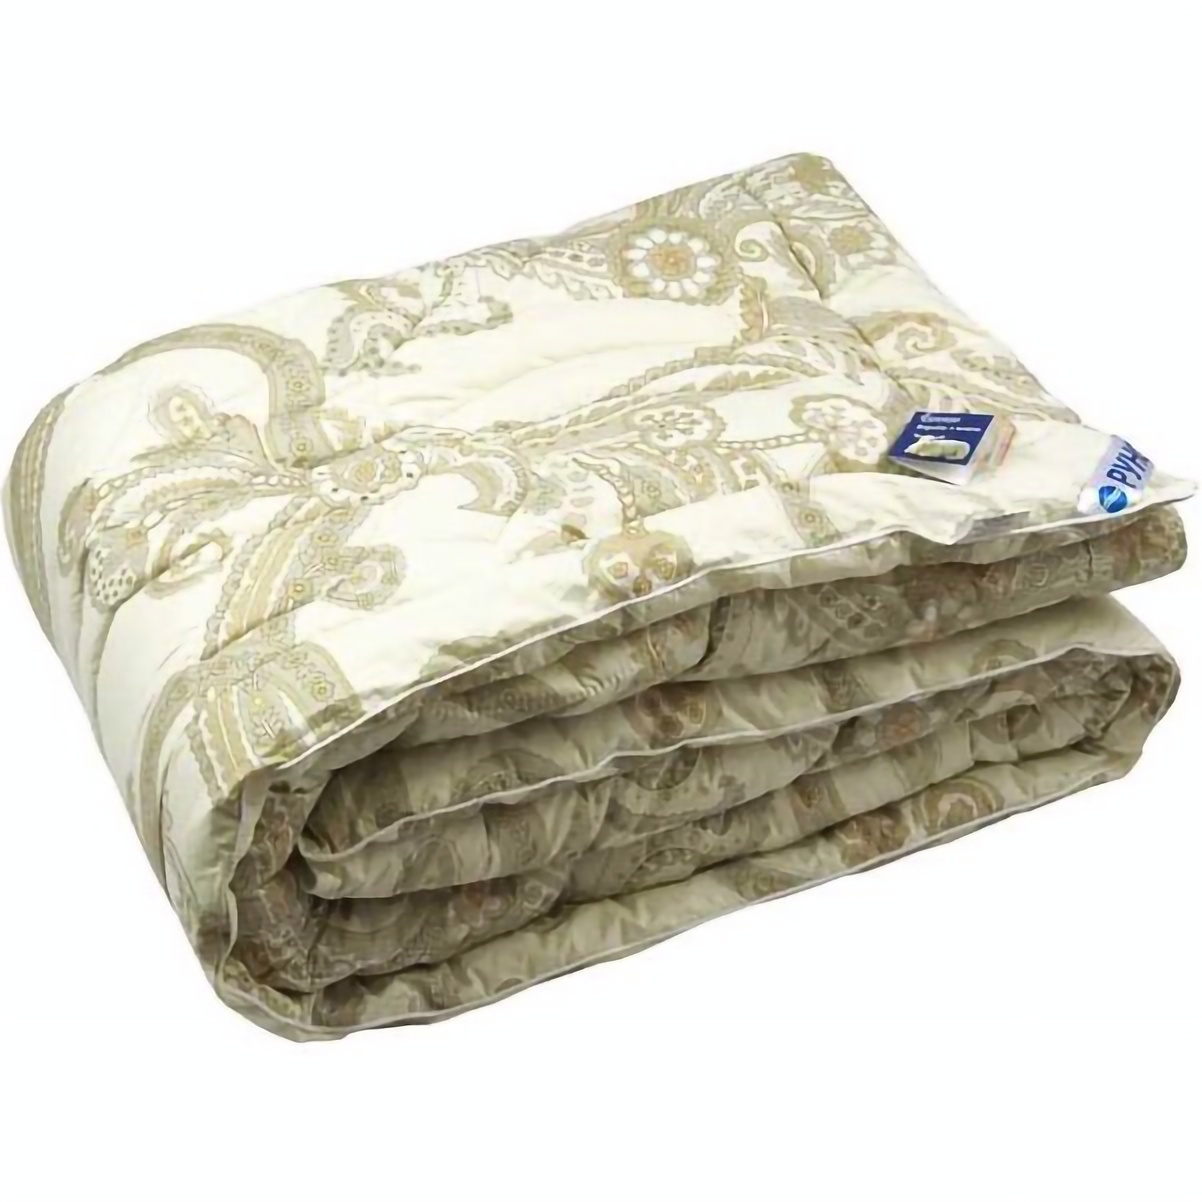 Одеяло шерстяное Руно Luxury, полуторное, тик, 205х140 см, бежевое (321.02ШУ_Luxury) - фото 1